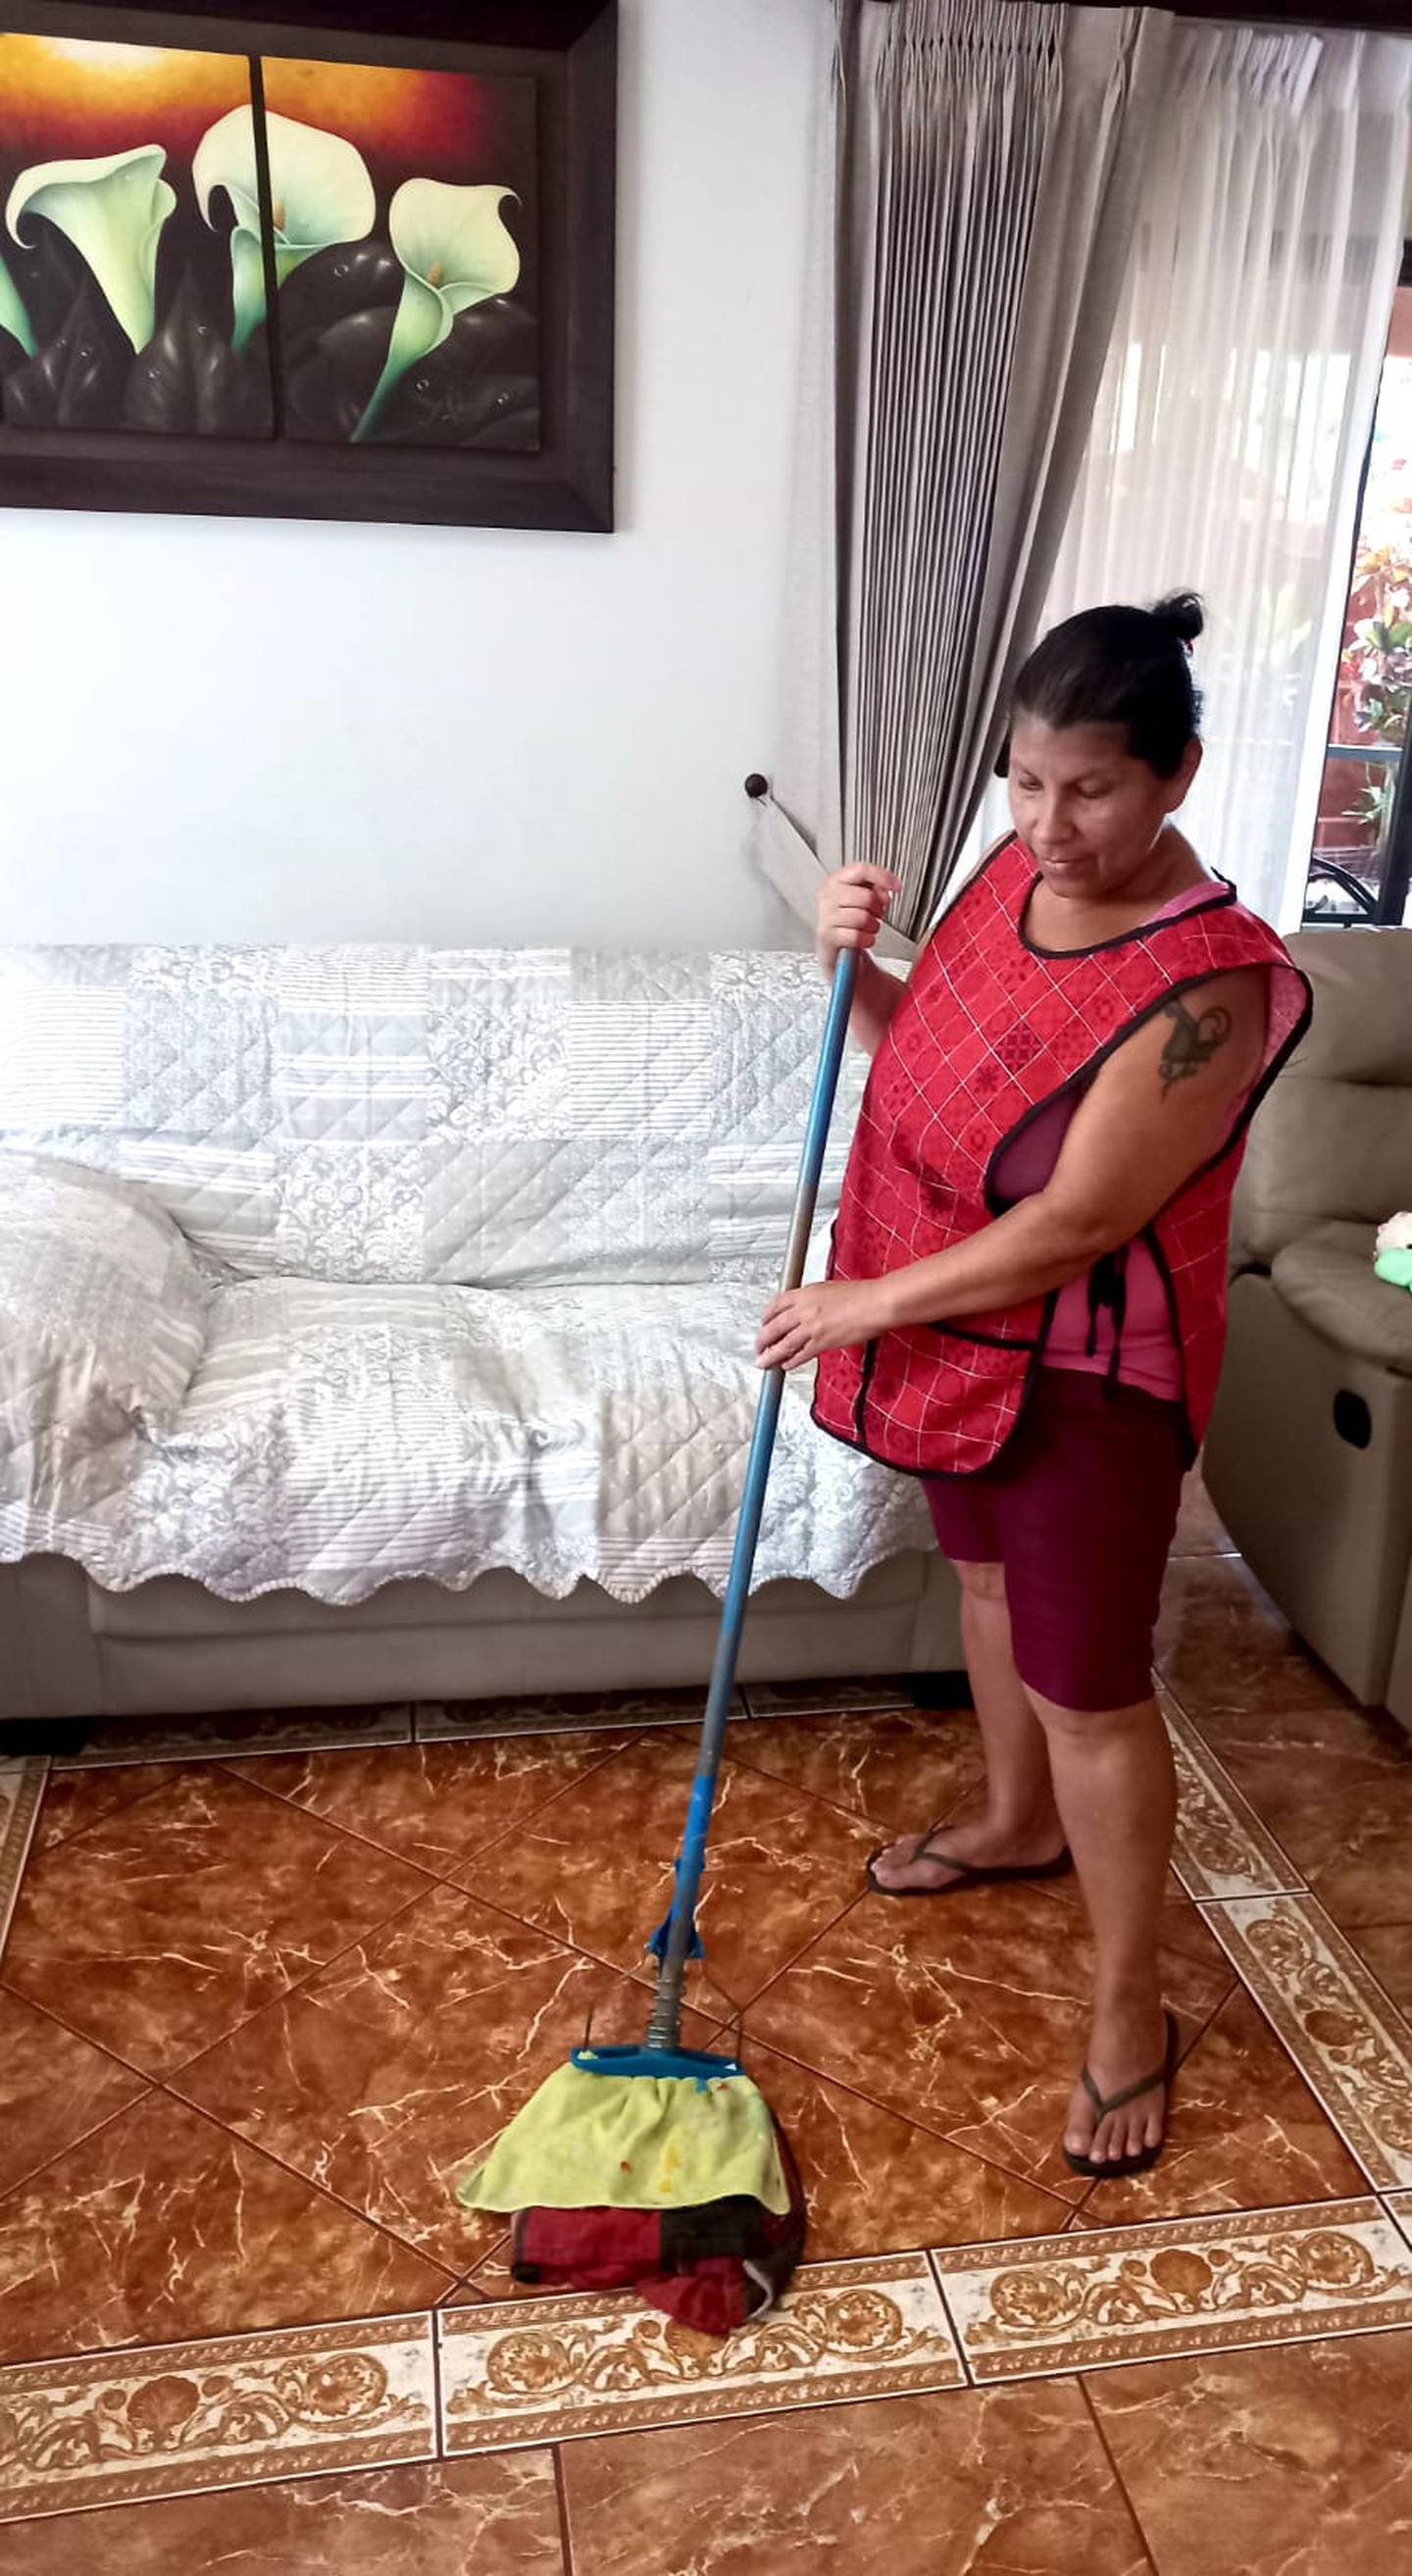 Chayo lleva más de la mitad de su vida viviendo en Costa Rica. El nombre de esta nicaragüense es María Ramos Herrera. Trabaja en limpieza de casas.